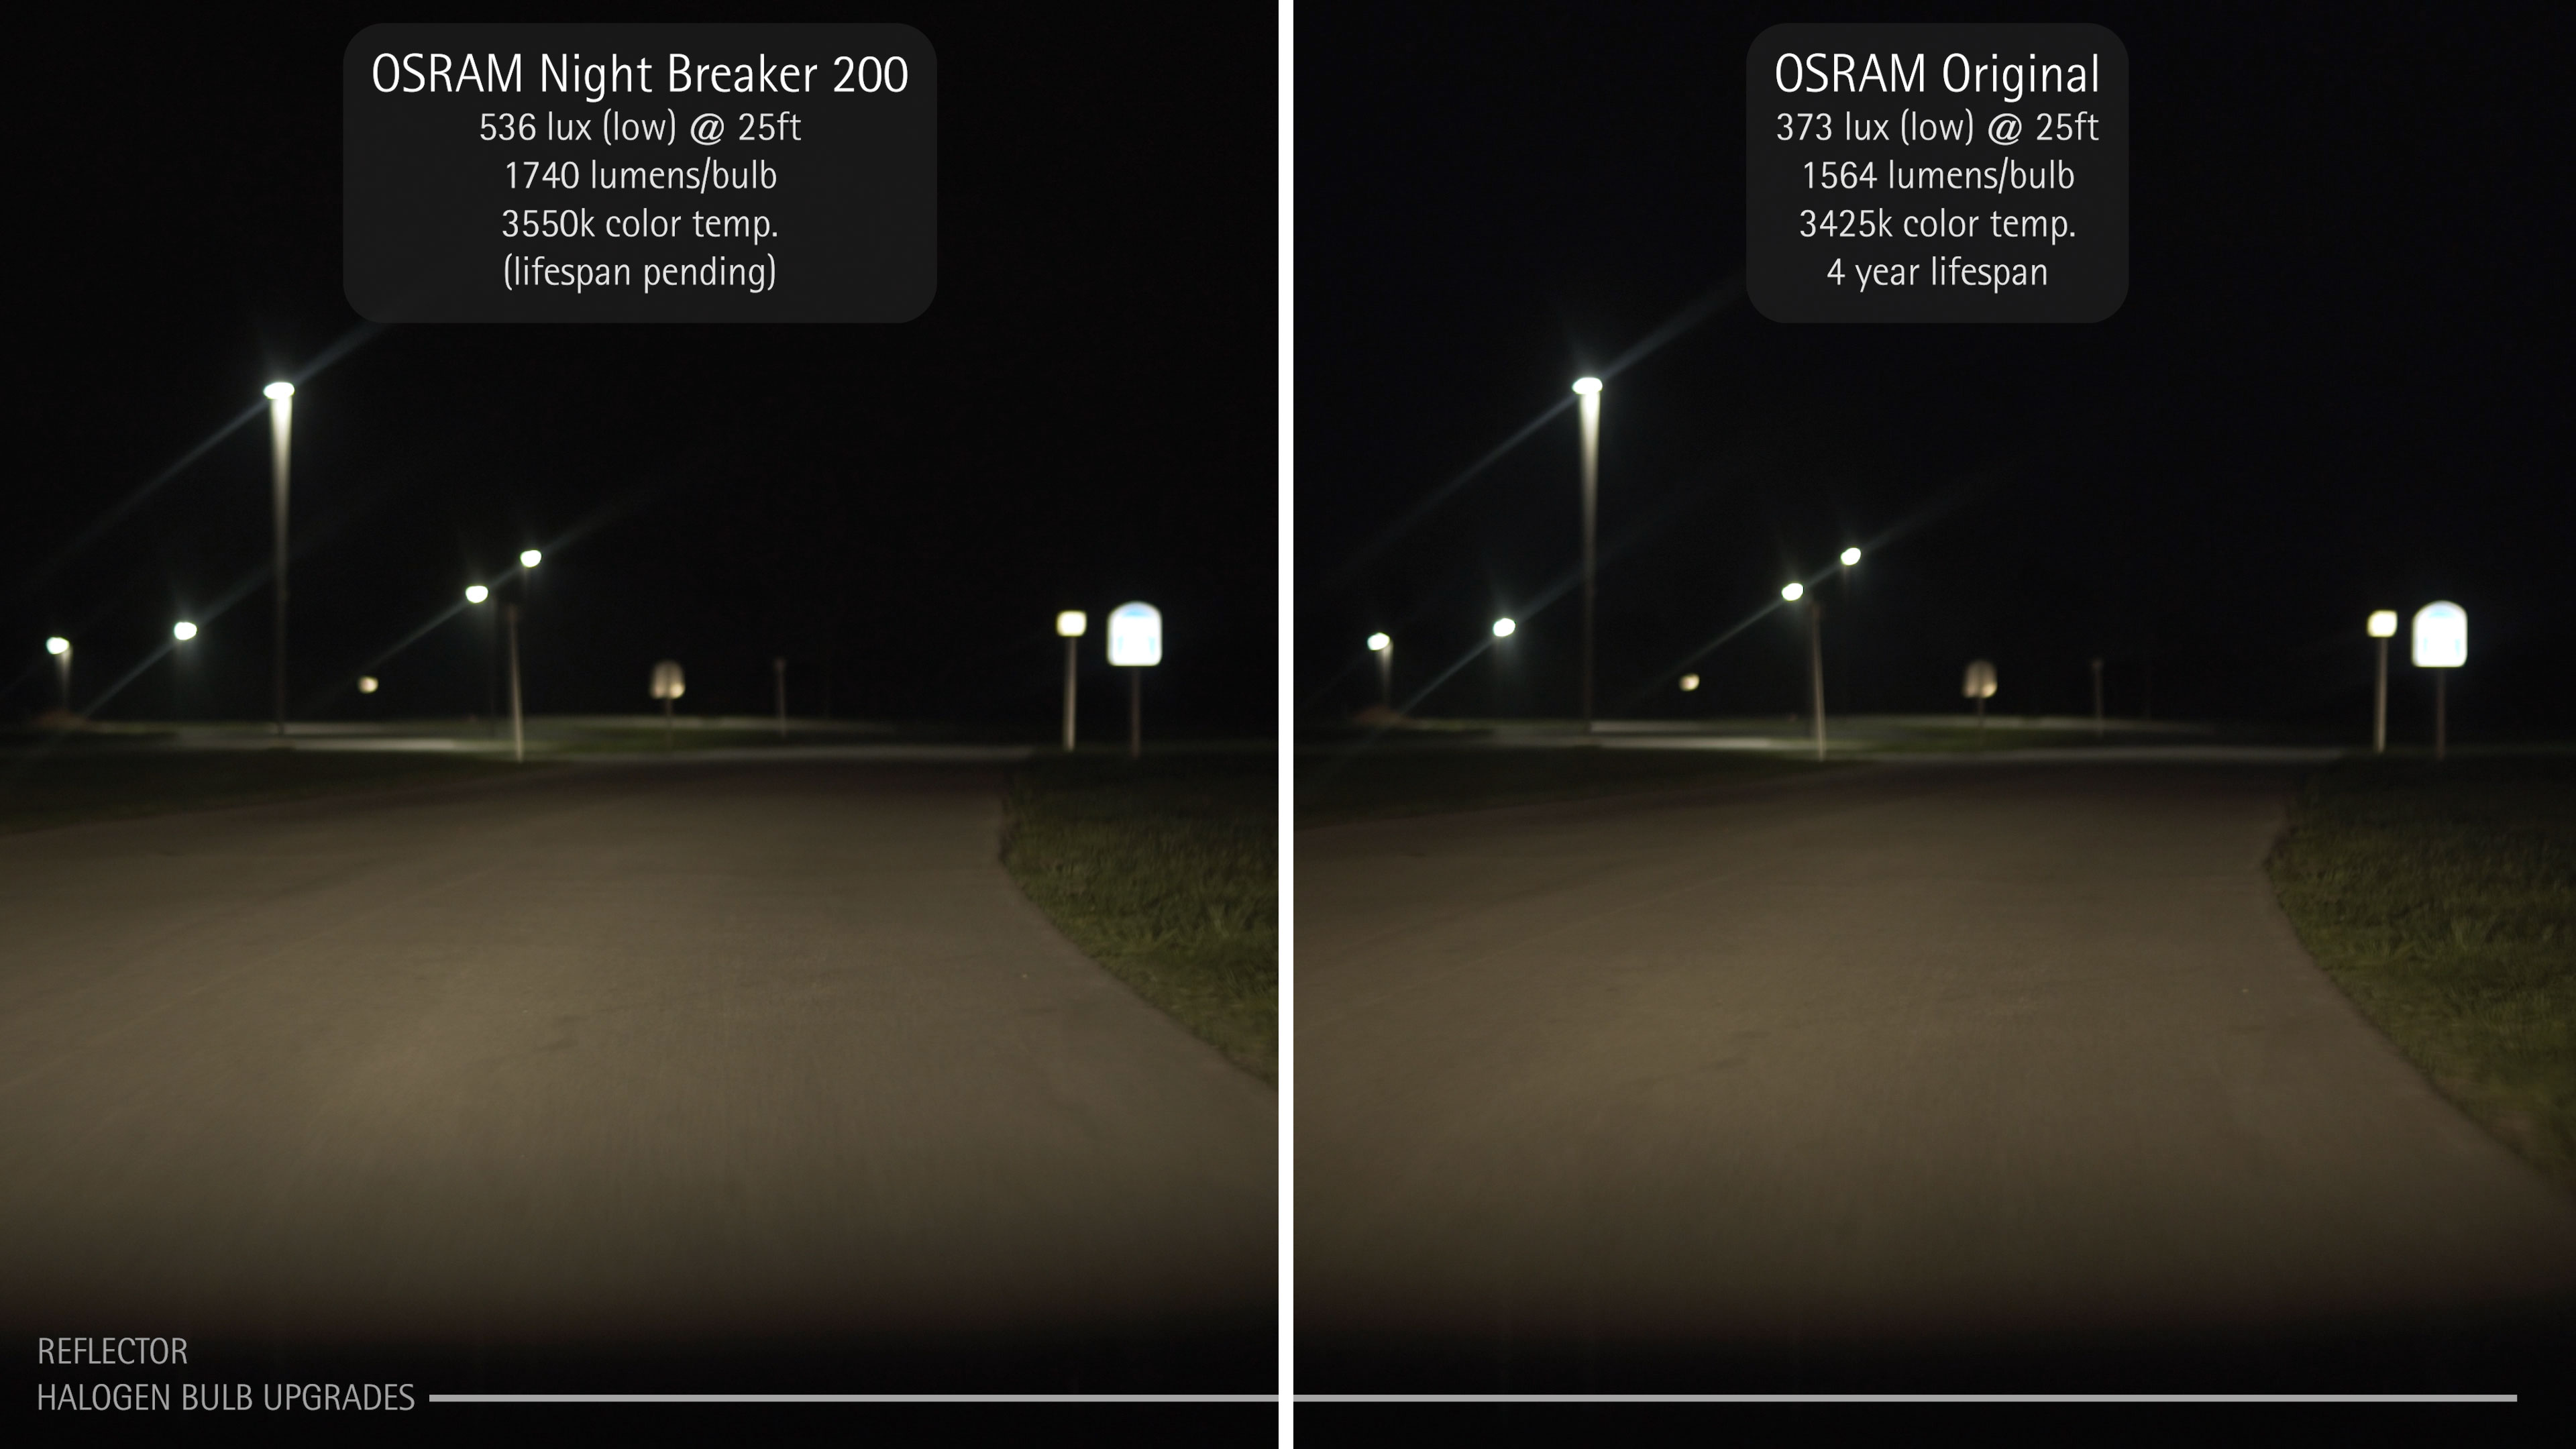 BulbFacts  OSRAM Night Breaker Laser vs OEM / Original Headlight